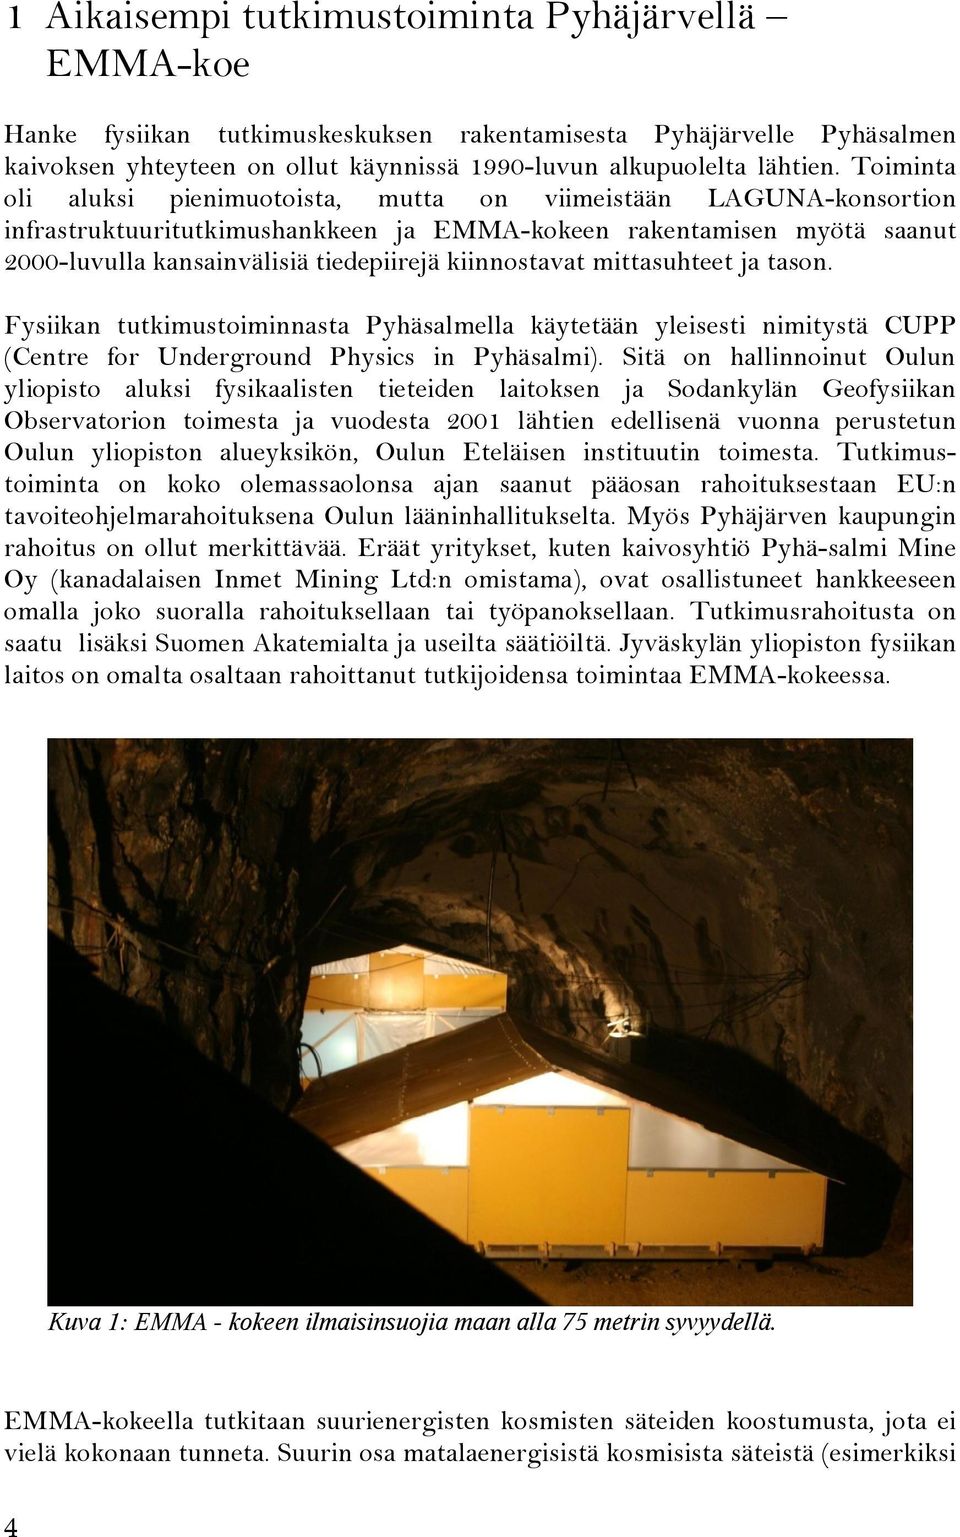 kiinnostavat mittasuhteet ja tason. Fysiikan tutkimustoiminnasta Pyhäsalmella käytetään yleisesti nimitystä CUPP (Centre for Underground Physics in Pyhäsalmi).